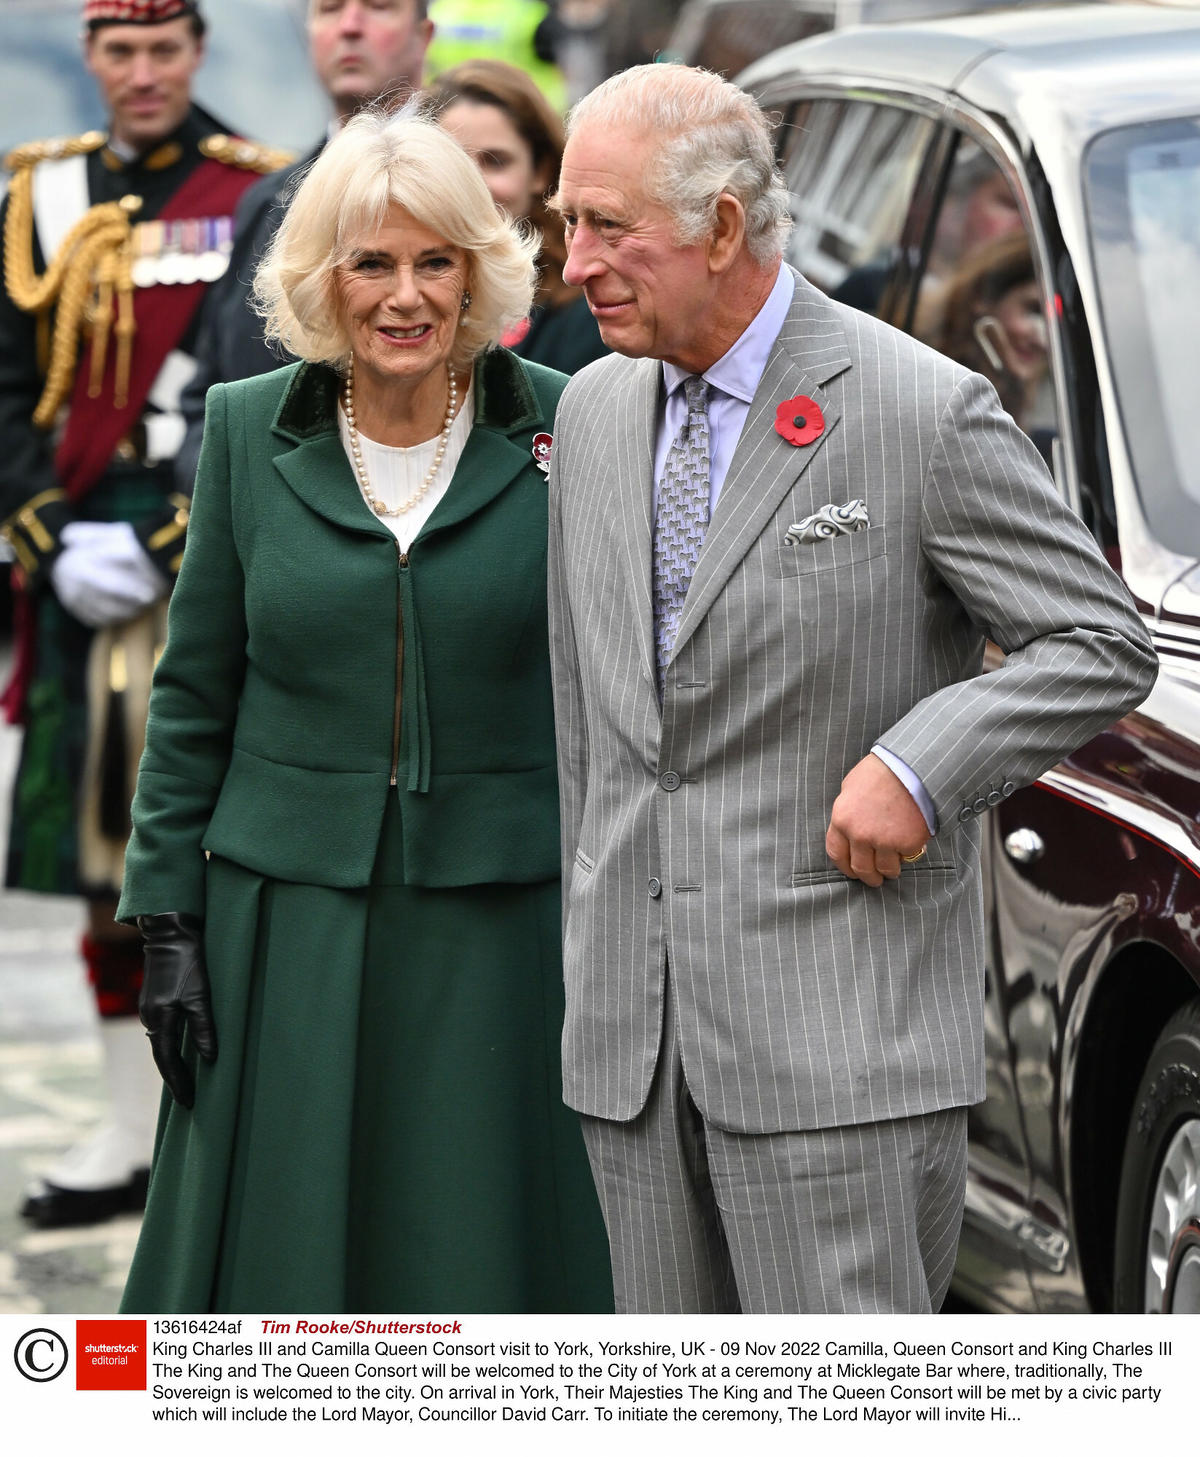  Karol III i Camilla